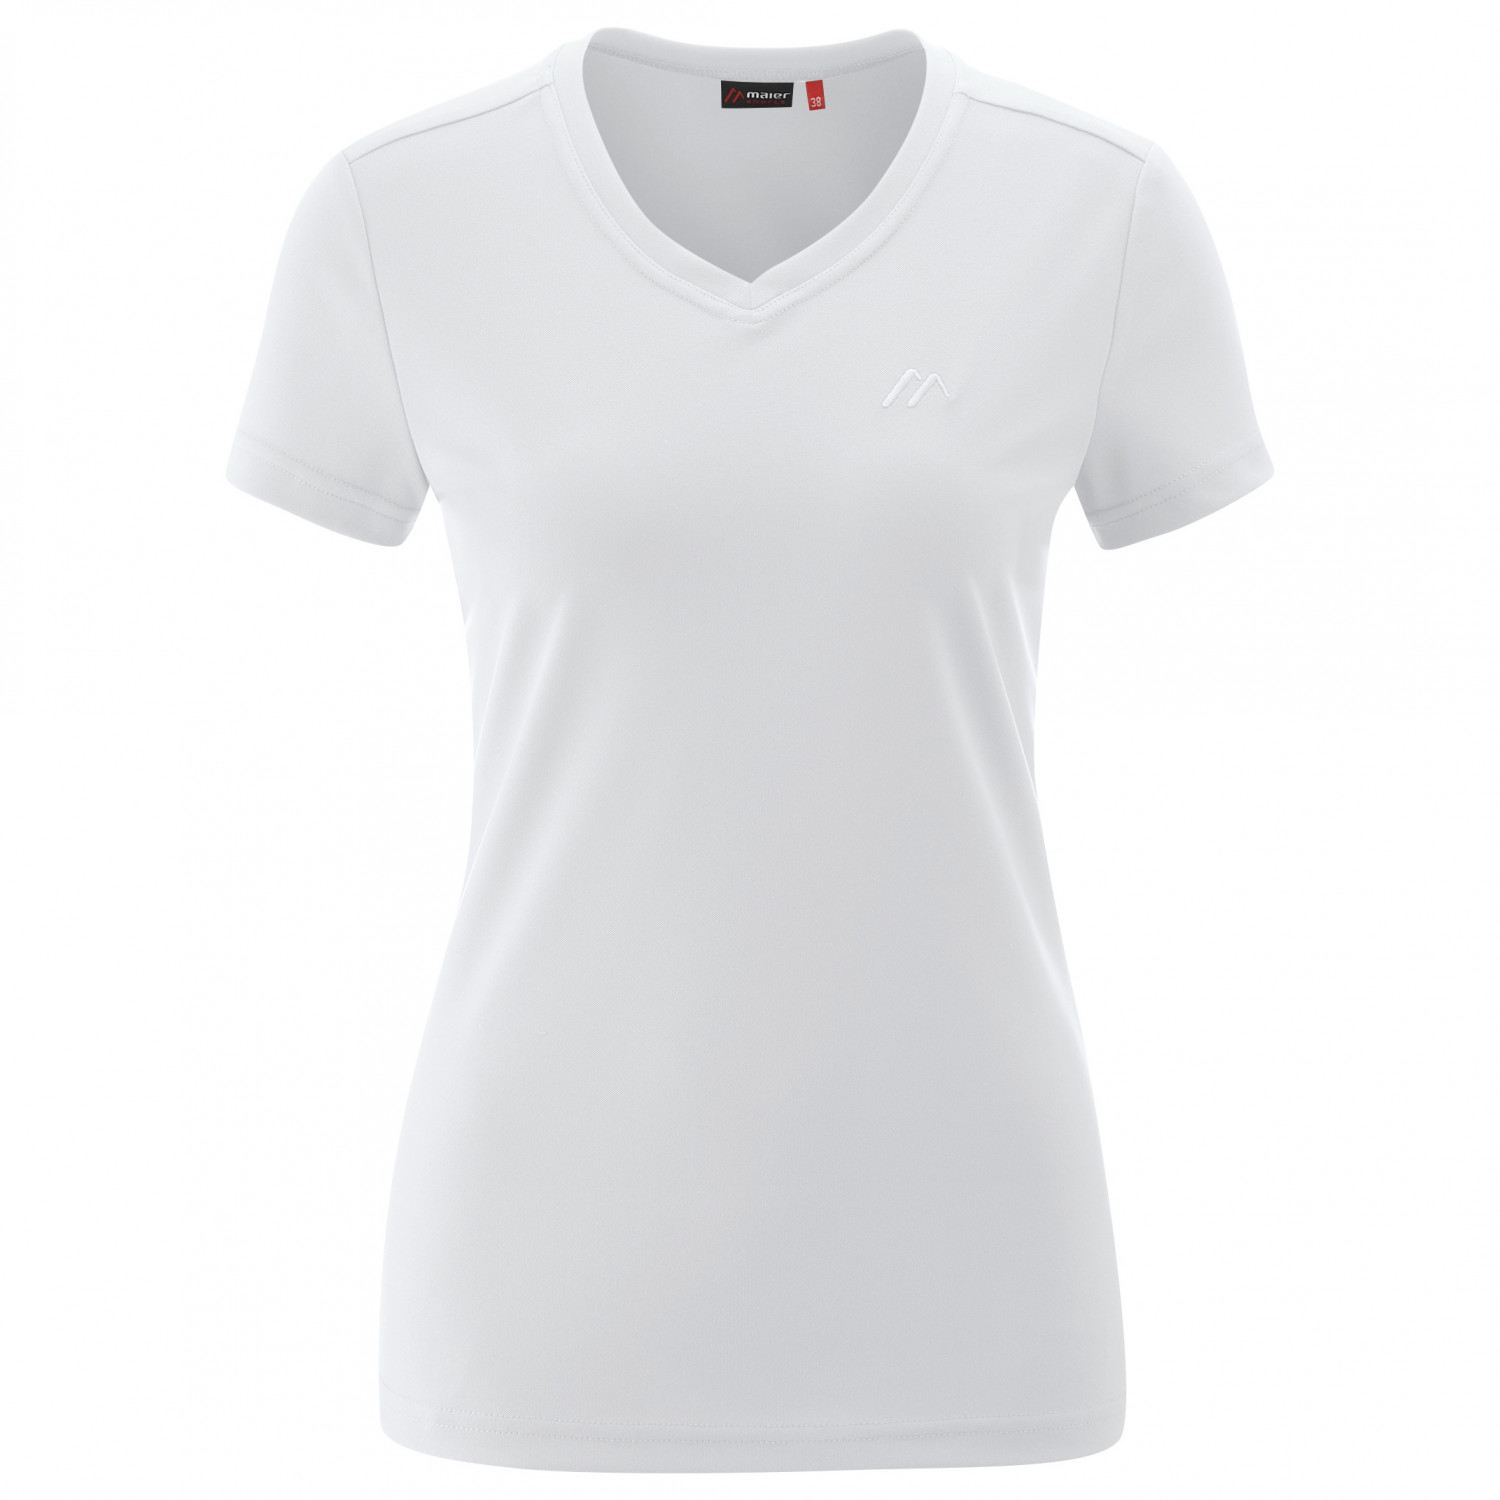 Функциональная рубашка Maier Sports Women's Trudy, белый